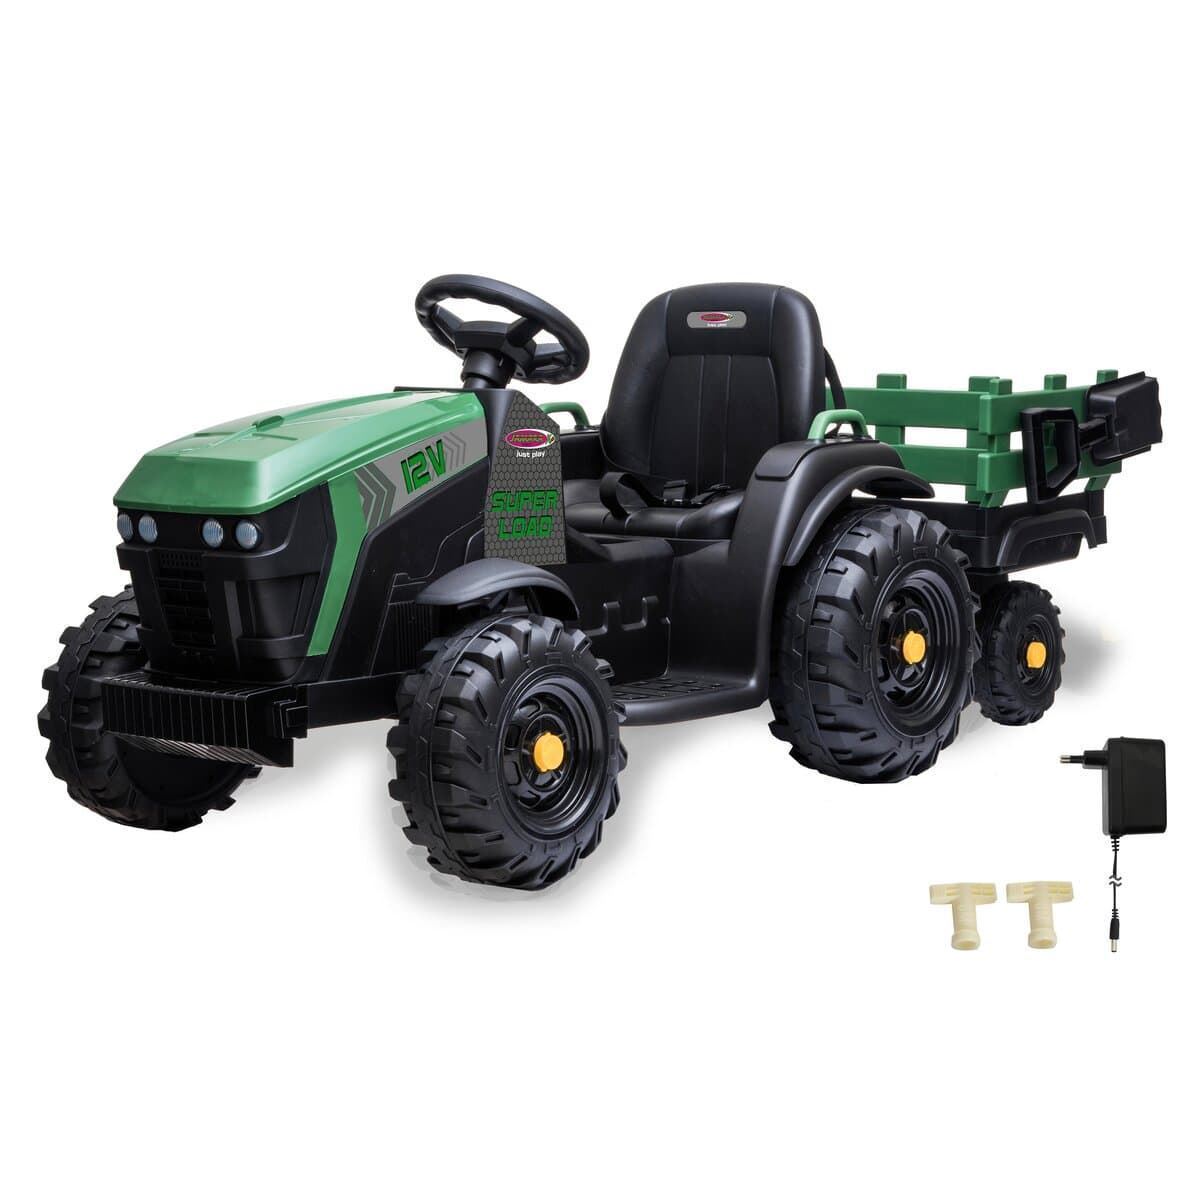 Tractor de batería 12v con remolque verde jamara 460896 - Imagen 4